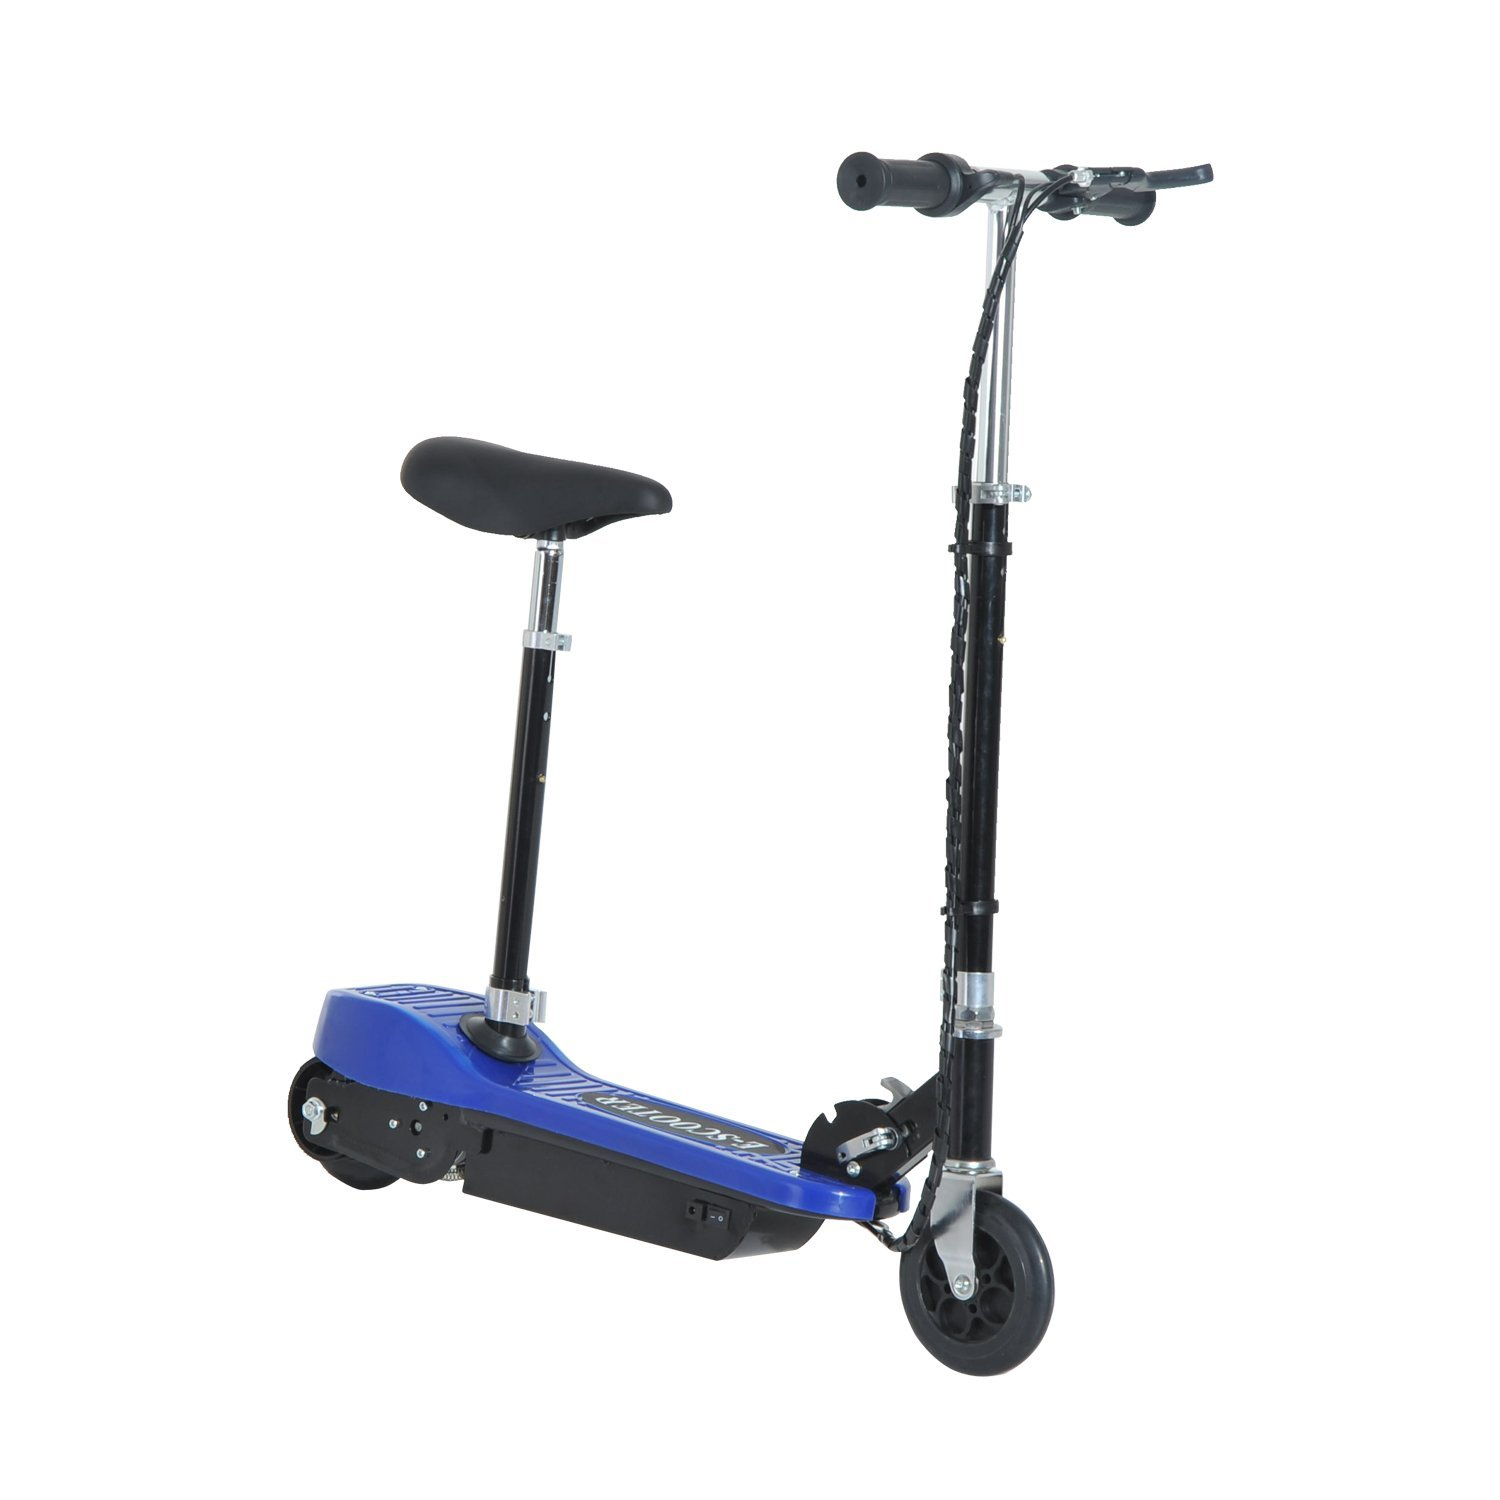 Homcom Patinete Para niño scooter plegable escooter batería 120w manillar ajustable freno pie de apoyo 78x37x99cm azul con y asiento 78x40x96cm